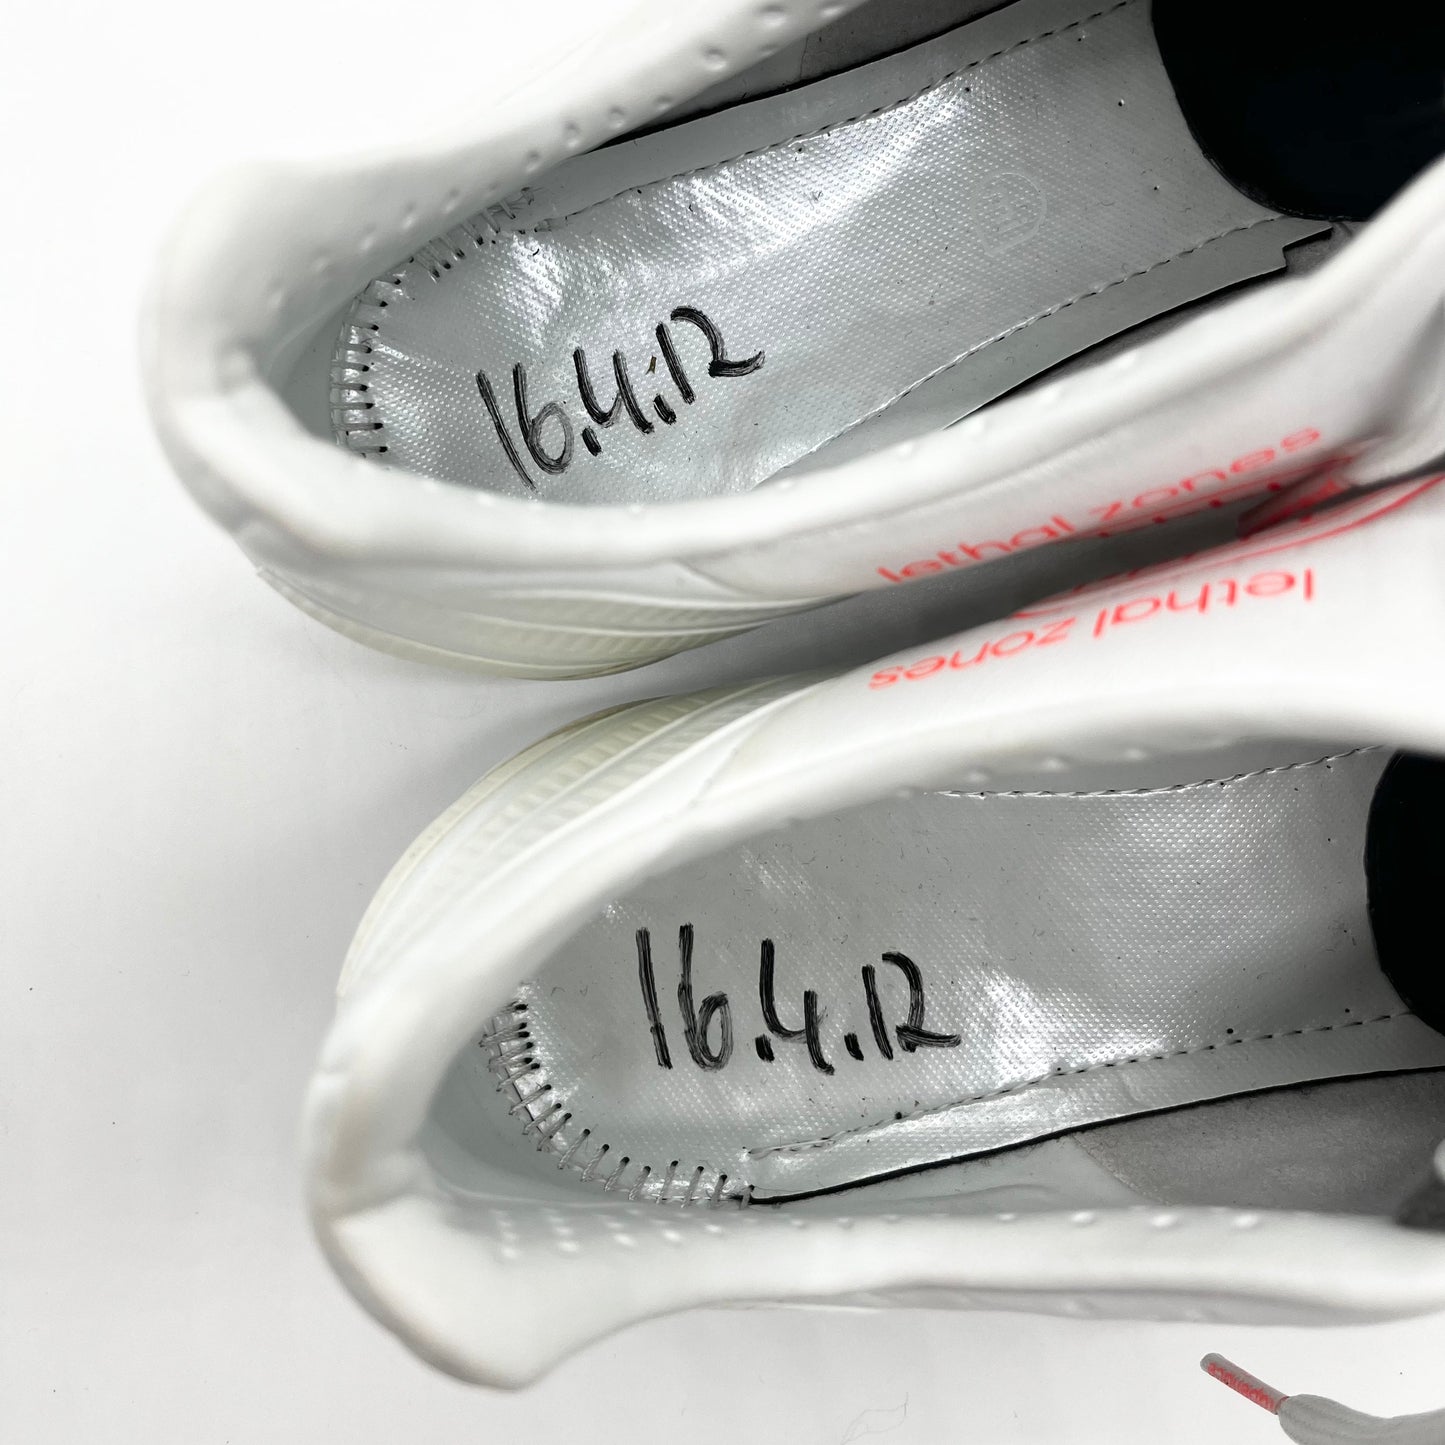 Kaká Match Usado Adidas Predator LZ #UNLEASH Assinado